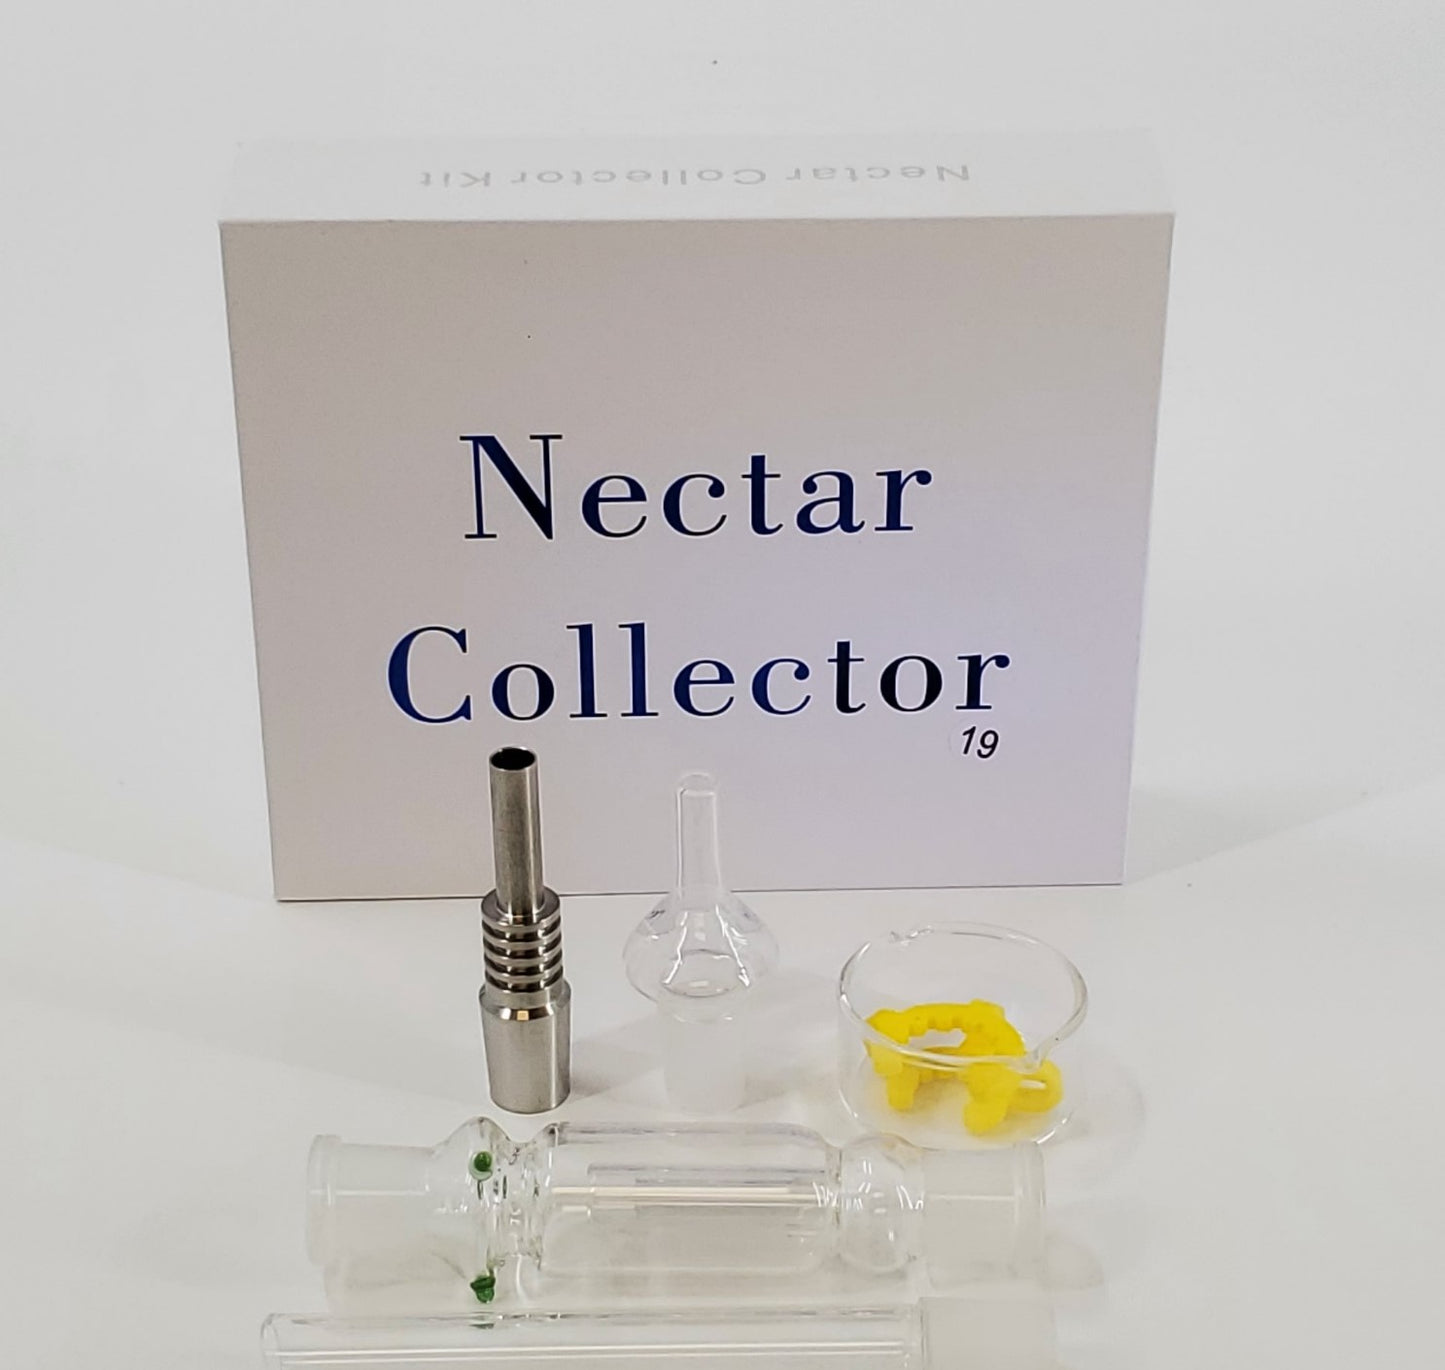 Nectar Collector Set with Quartz and Titanium